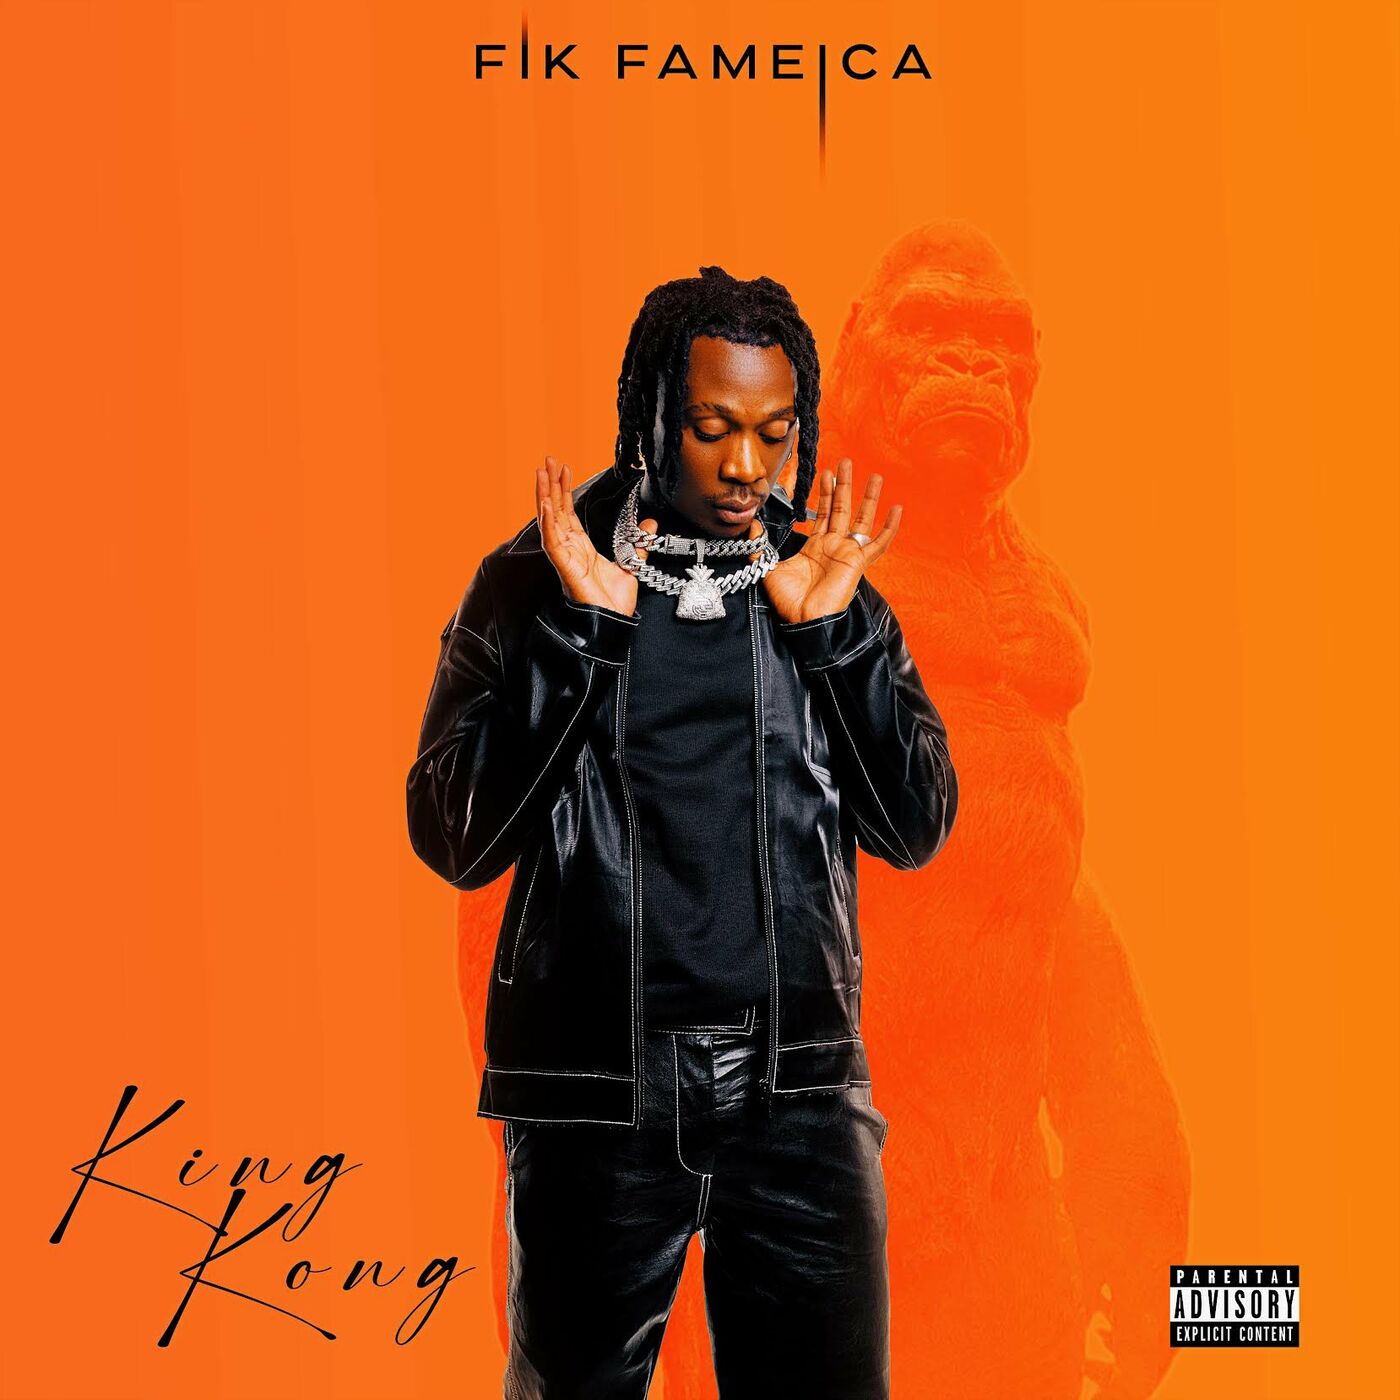 fik-fameica-mpakasa-album-cover